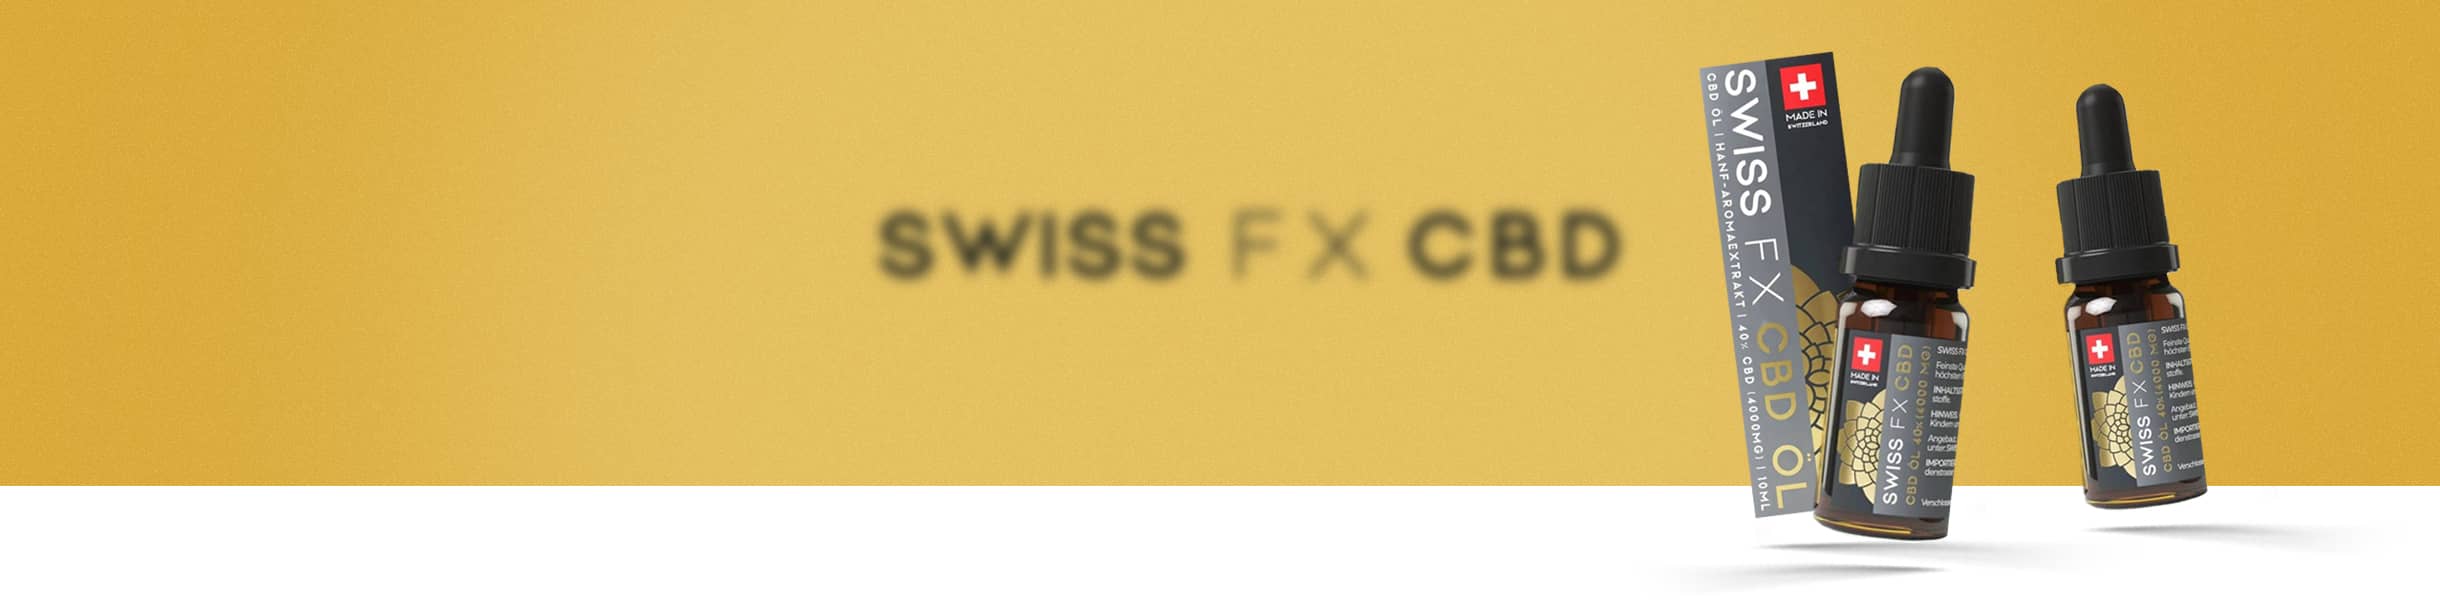 Swiss FX Online Shop